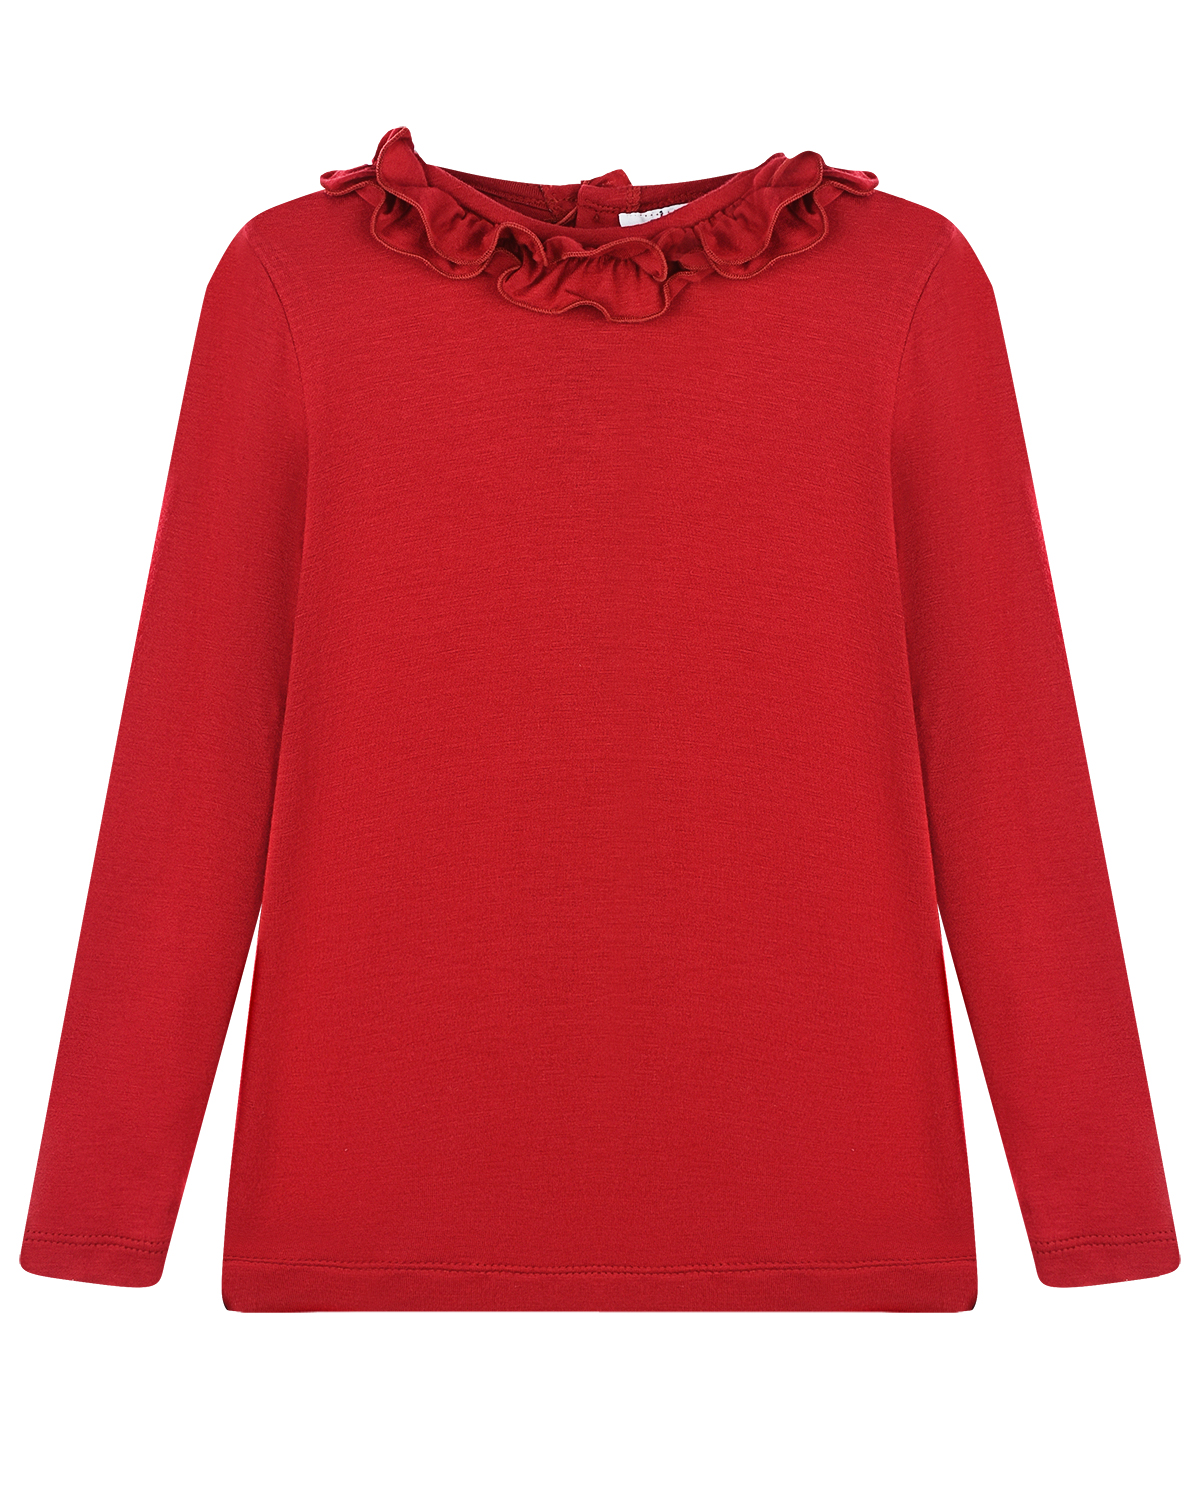 Красная толстовка с рюшами Aletta детская, размер 98, цвет красный - фото 1